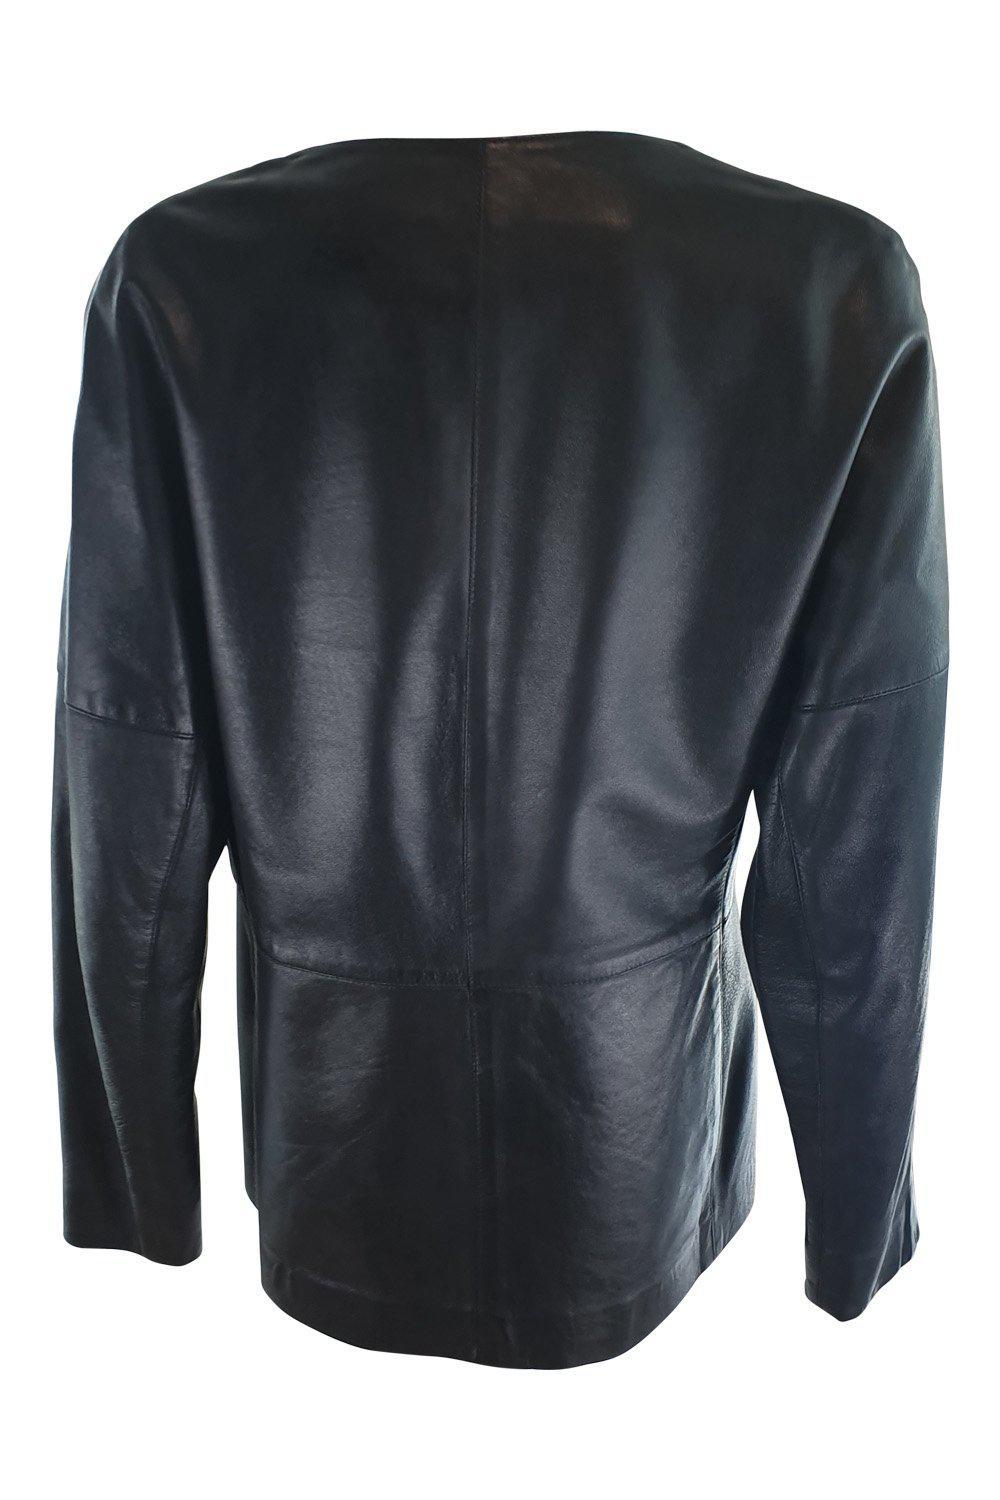 Jaeger Black Leather Jacket UK 12